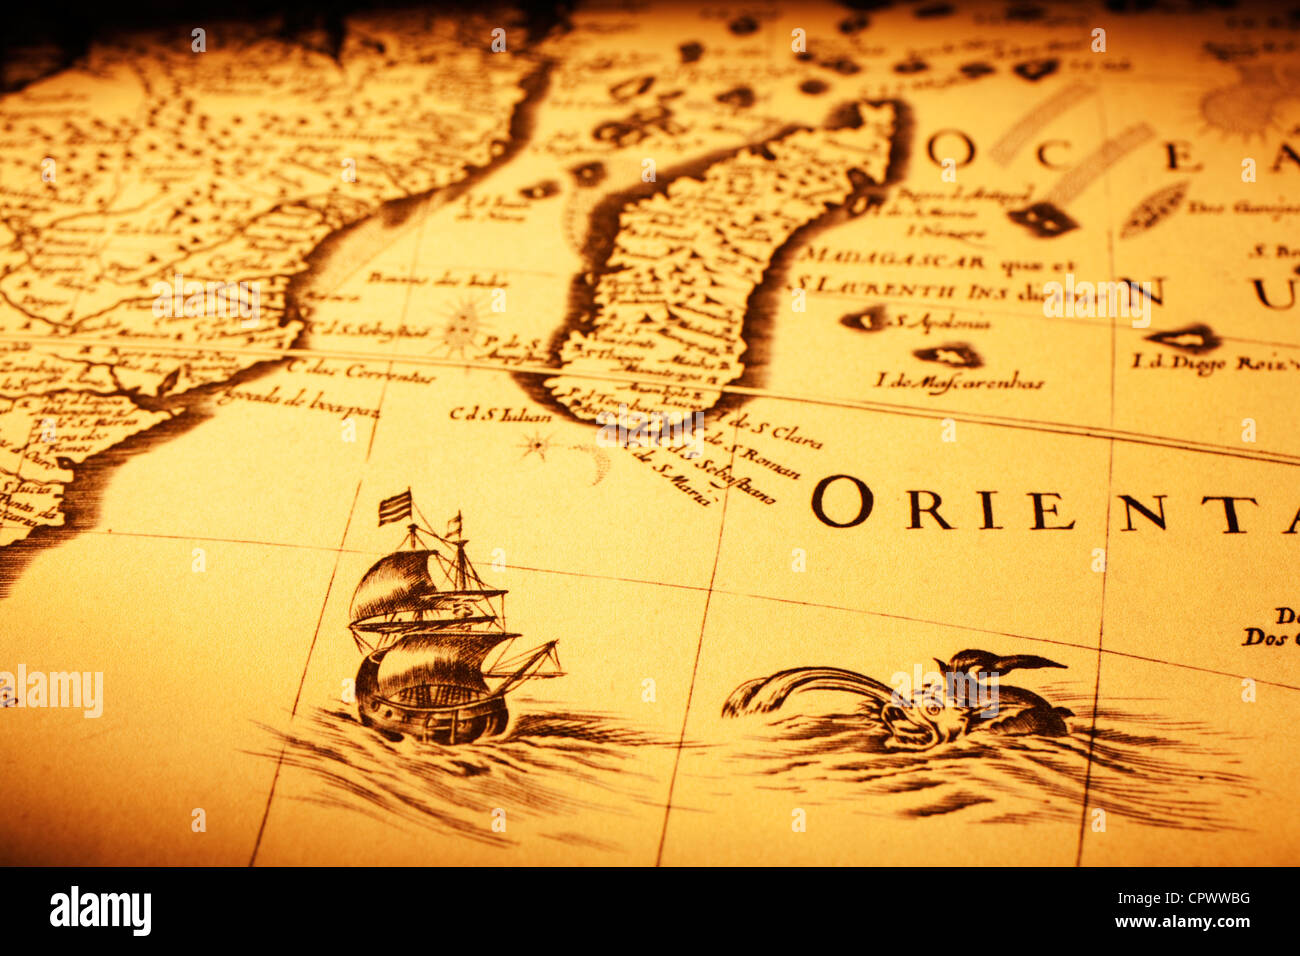 Detalle de un viejo mapa mostrando un buque frente a Madagascar, un monstruo de mar y la costa de África. Foto de stock